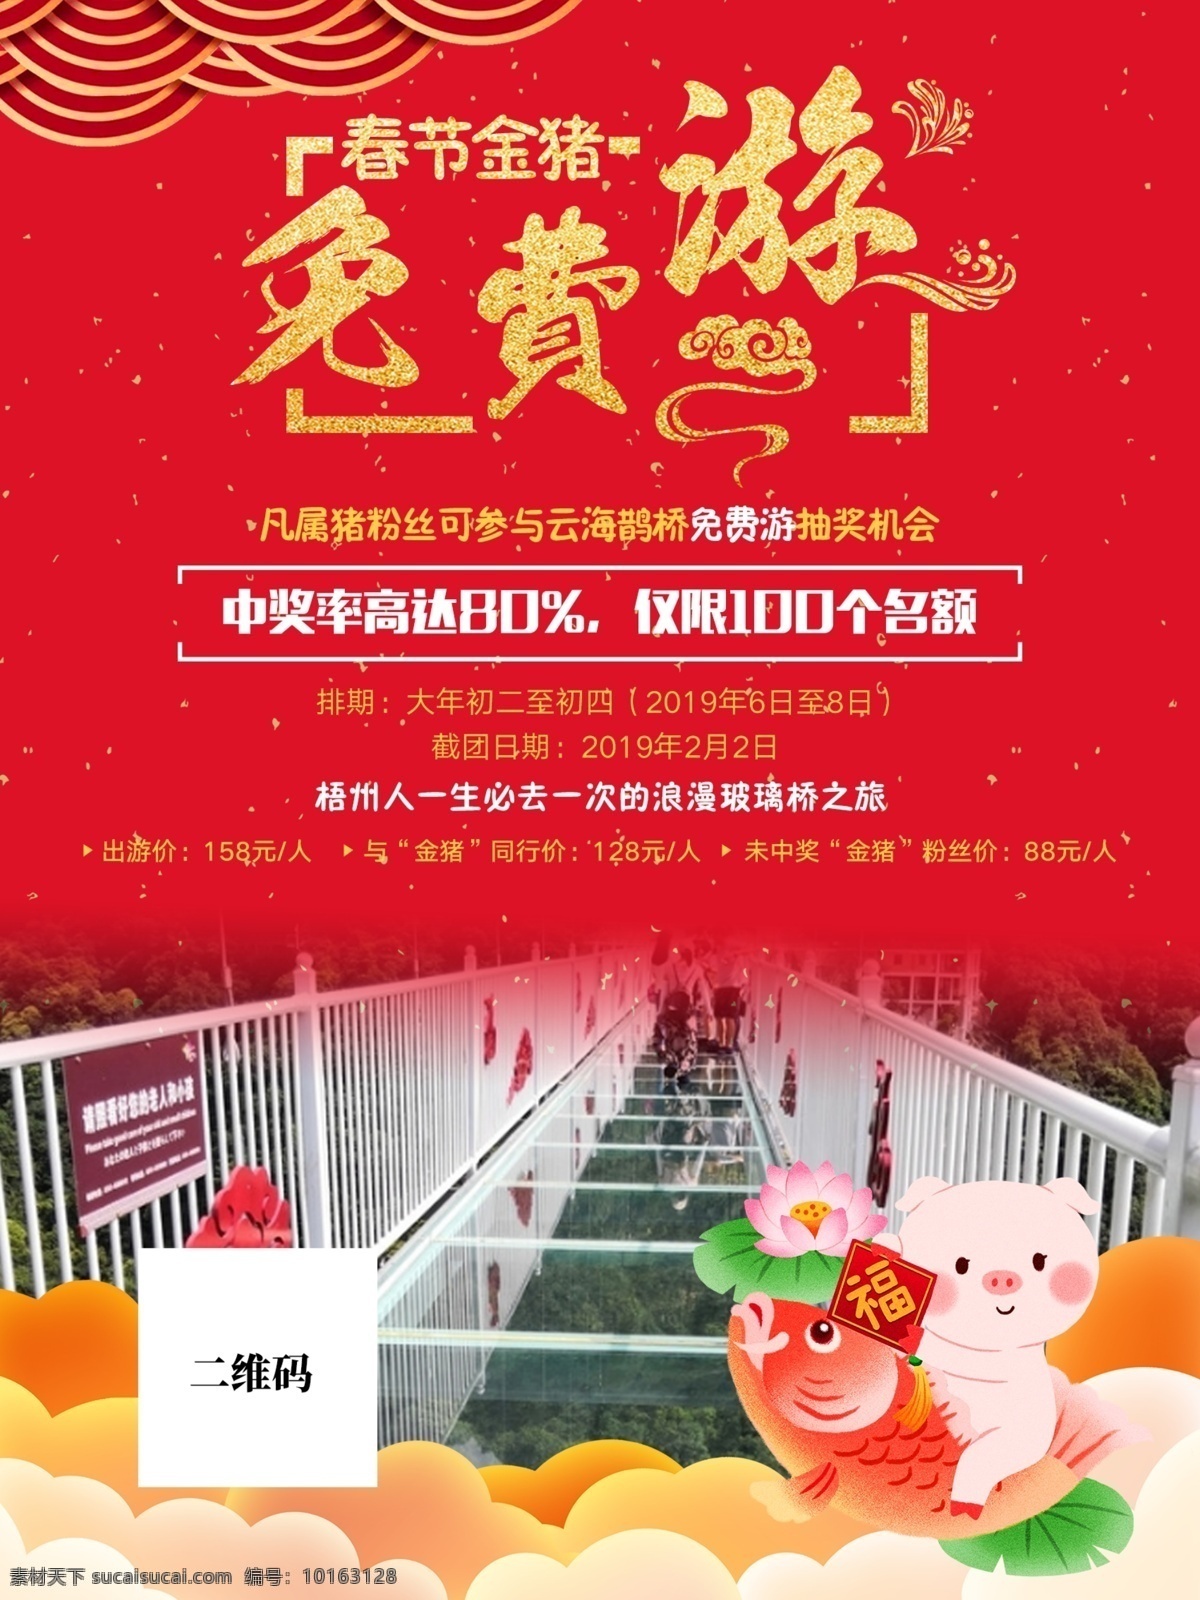 旅游海报 旅游 春节 喜庆 过年 玻璃桥 锦鲤 猪年